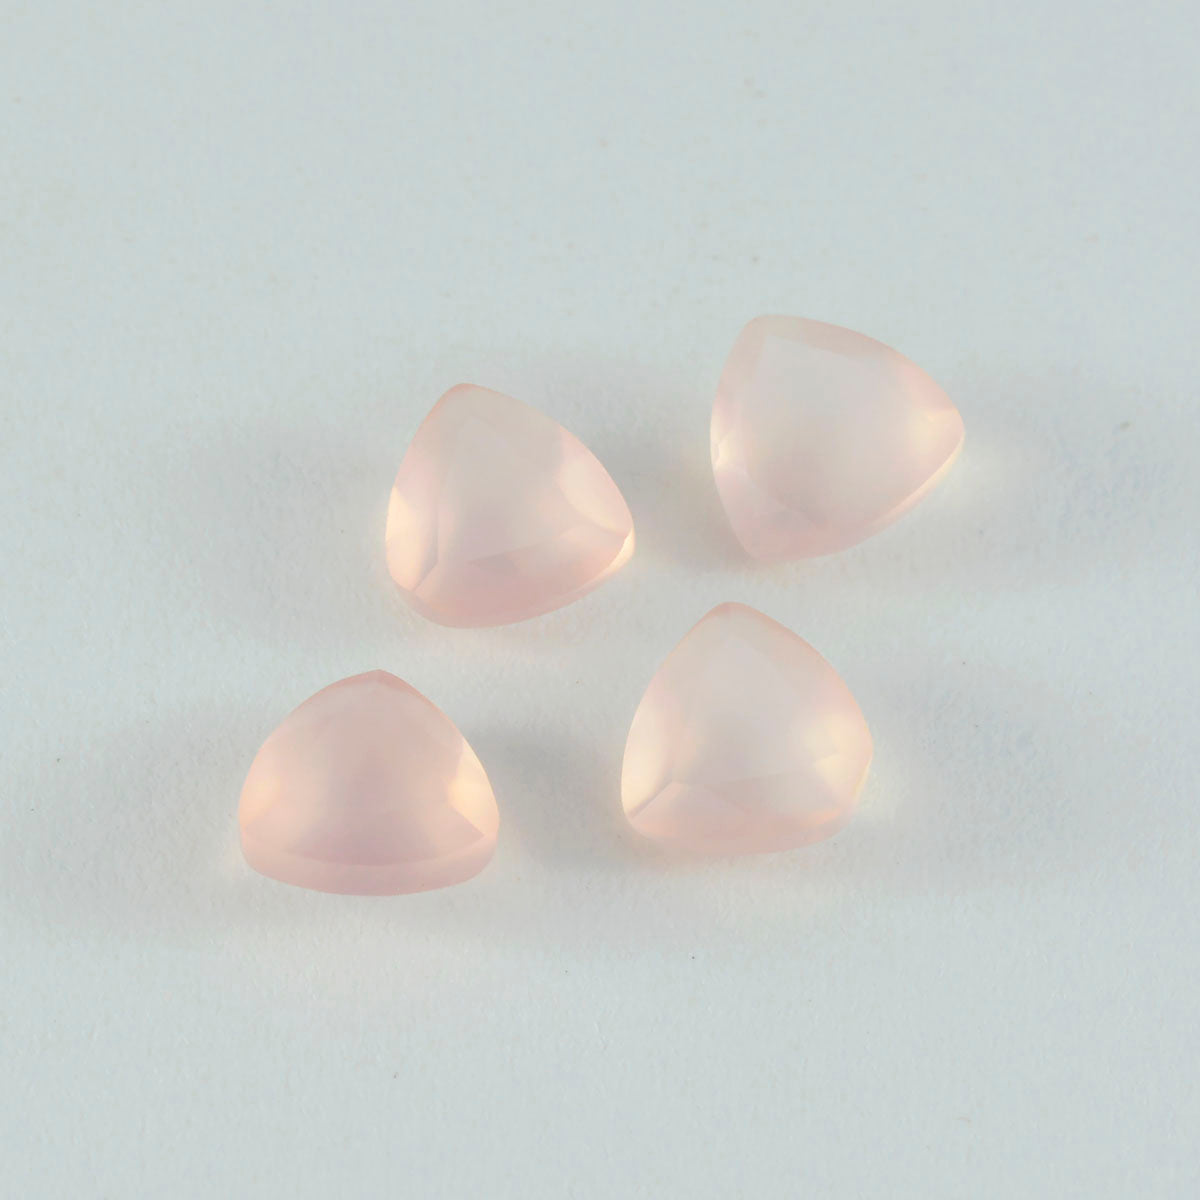 Riyogems 1pc quartz rose à facettes 14x14mm forme trillion belle qualité gemme en vrac